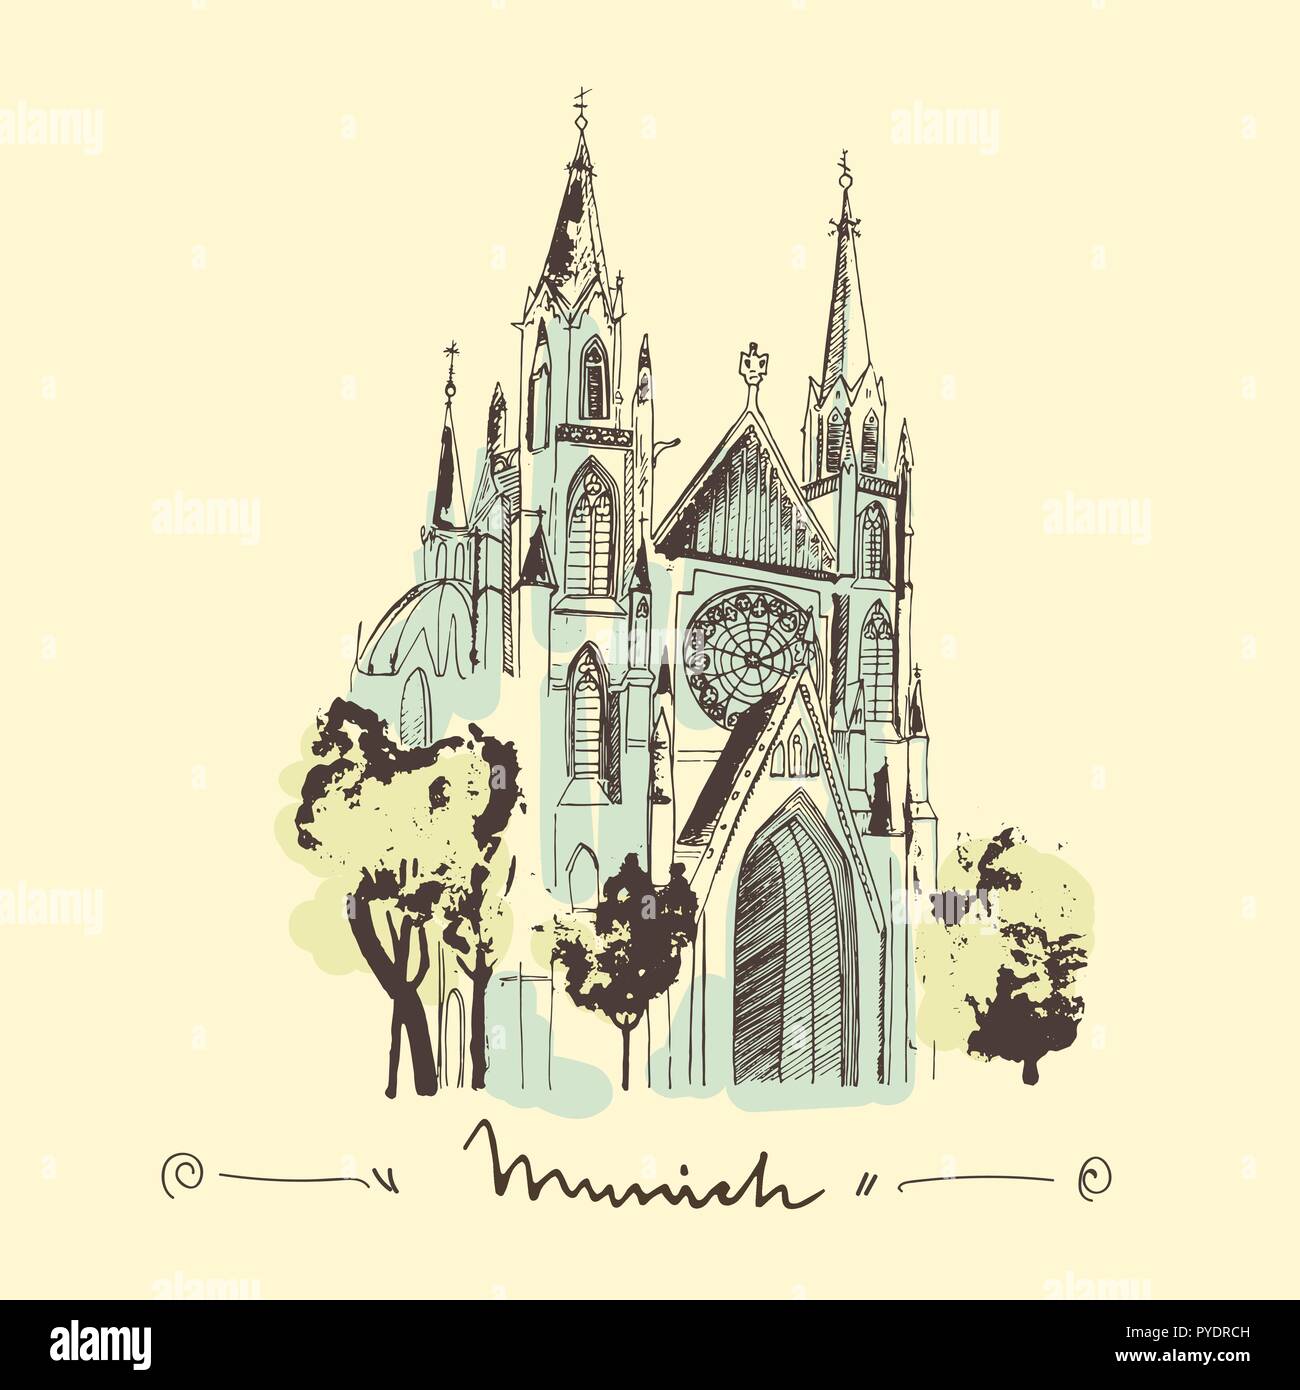 Skizze der St. Paul Kirche in München Hand gezeichnet Abbildung. Gotische Kathedrale als Wahrzeichen von München. Stock Vektor